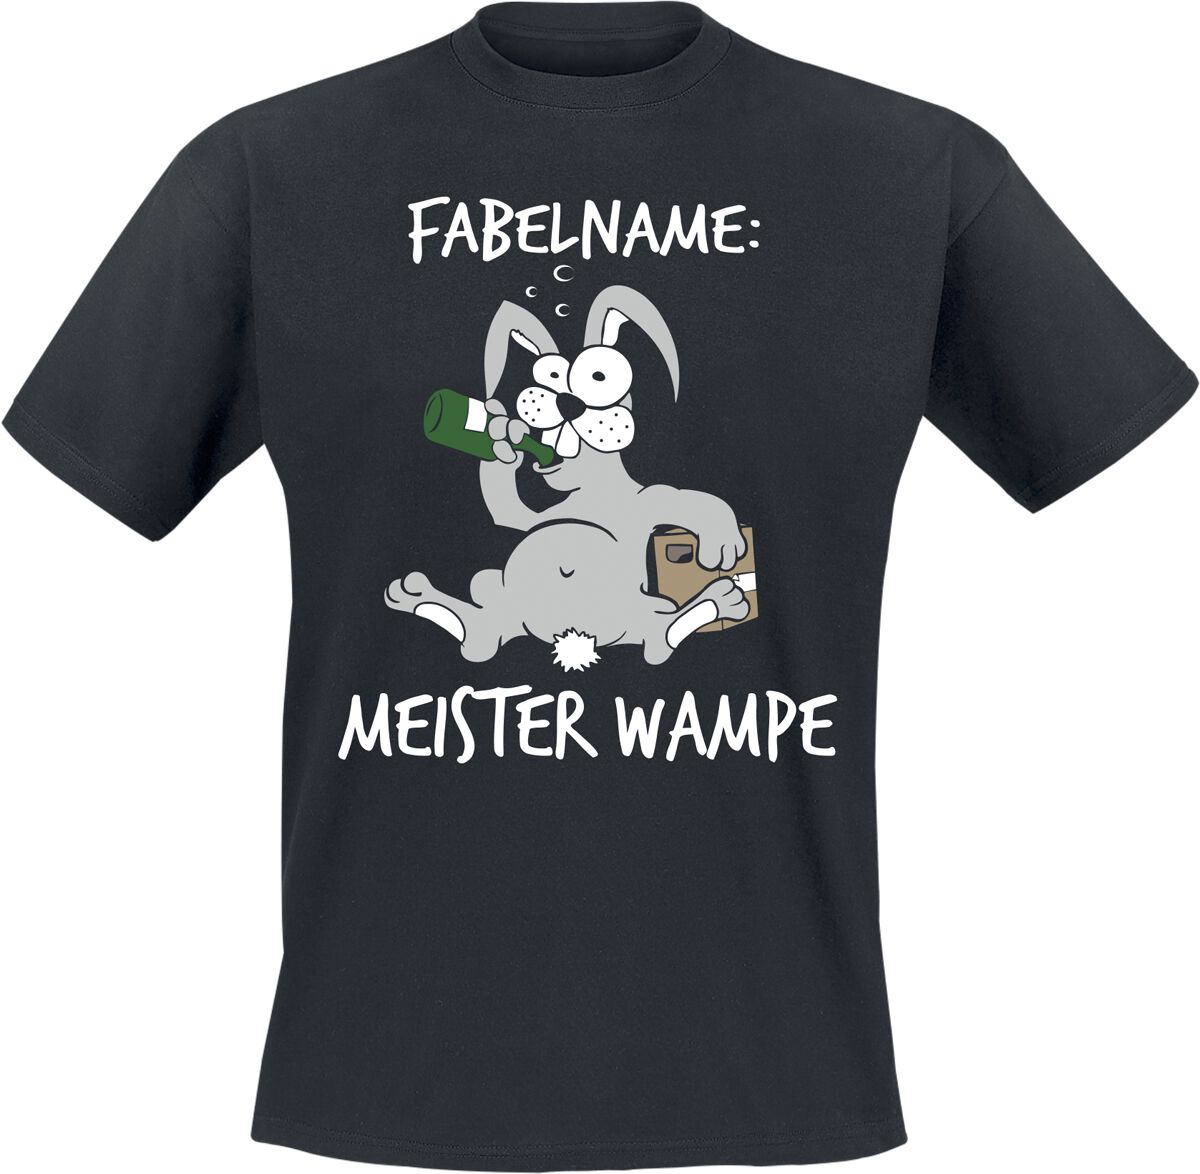 Tierisch T-Shirt - Fabelname: Meister Wampe - M bis XL - für Männer - Größe XL - schwarz